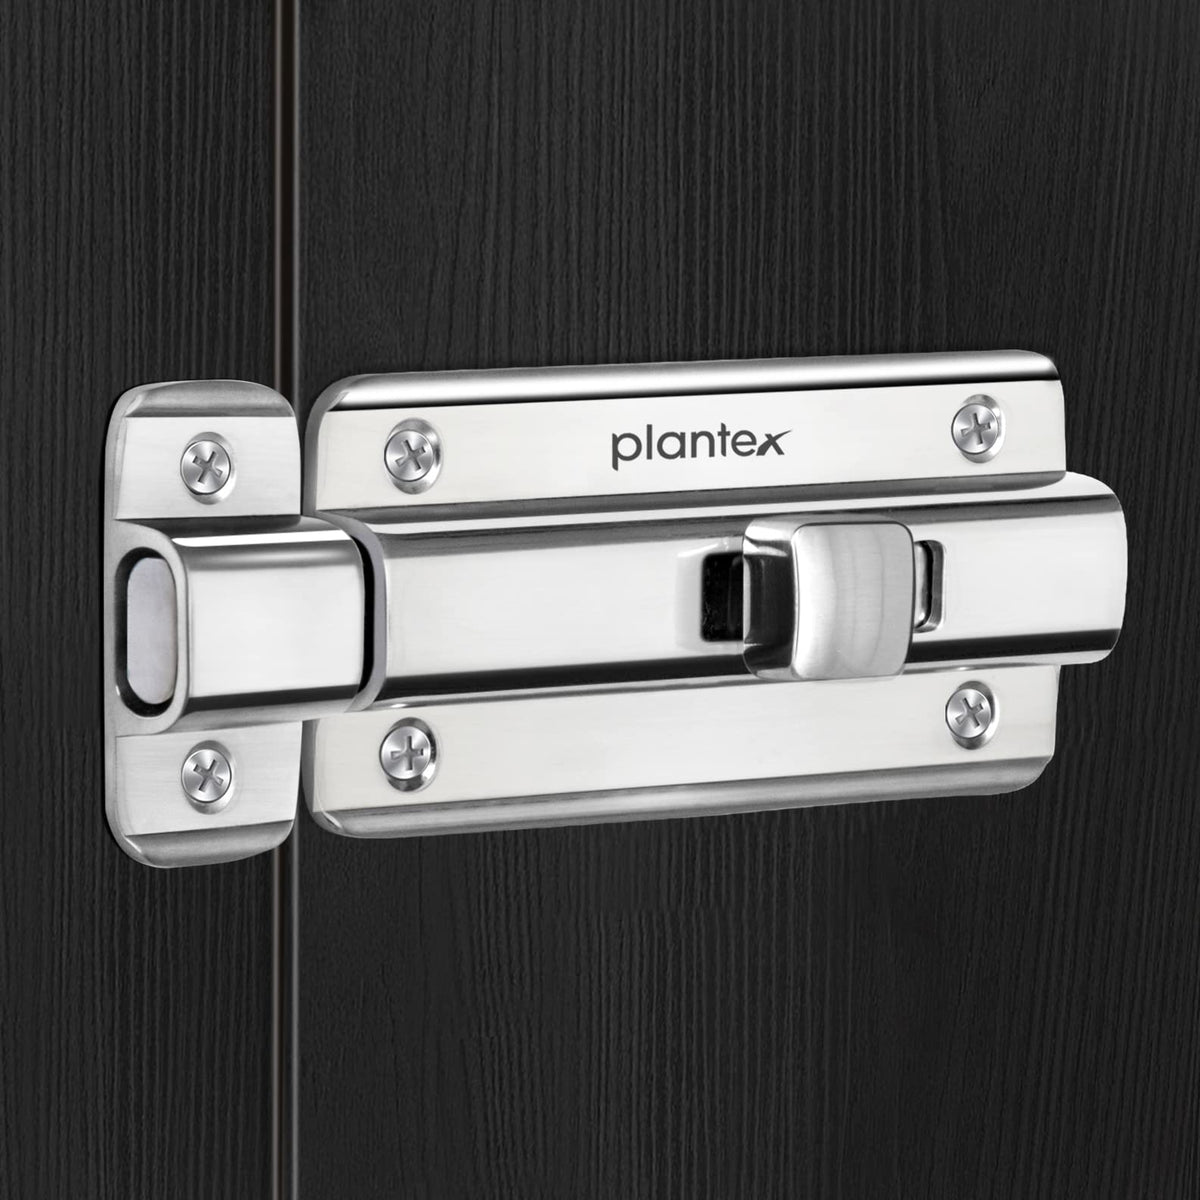 Plantex Premium Heavy Duty Door Stopper/Door Lock Latch for Home and Office Doors - Pack of 4 (Chrome)